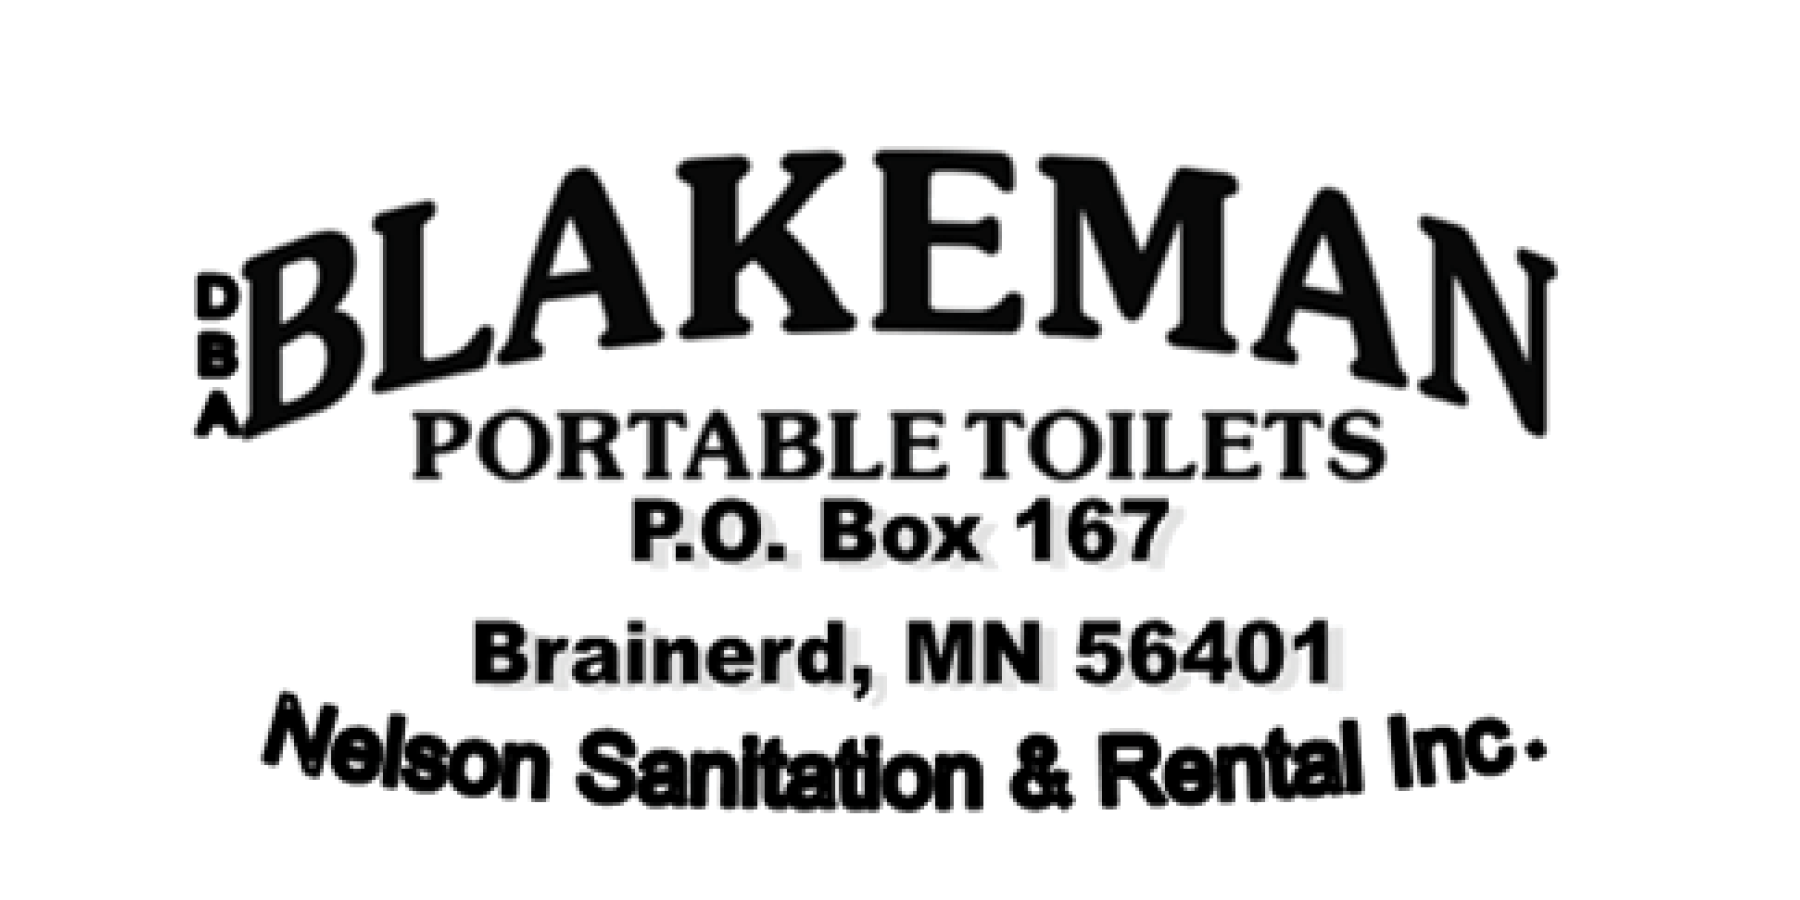 Blakeman Portable Toilets